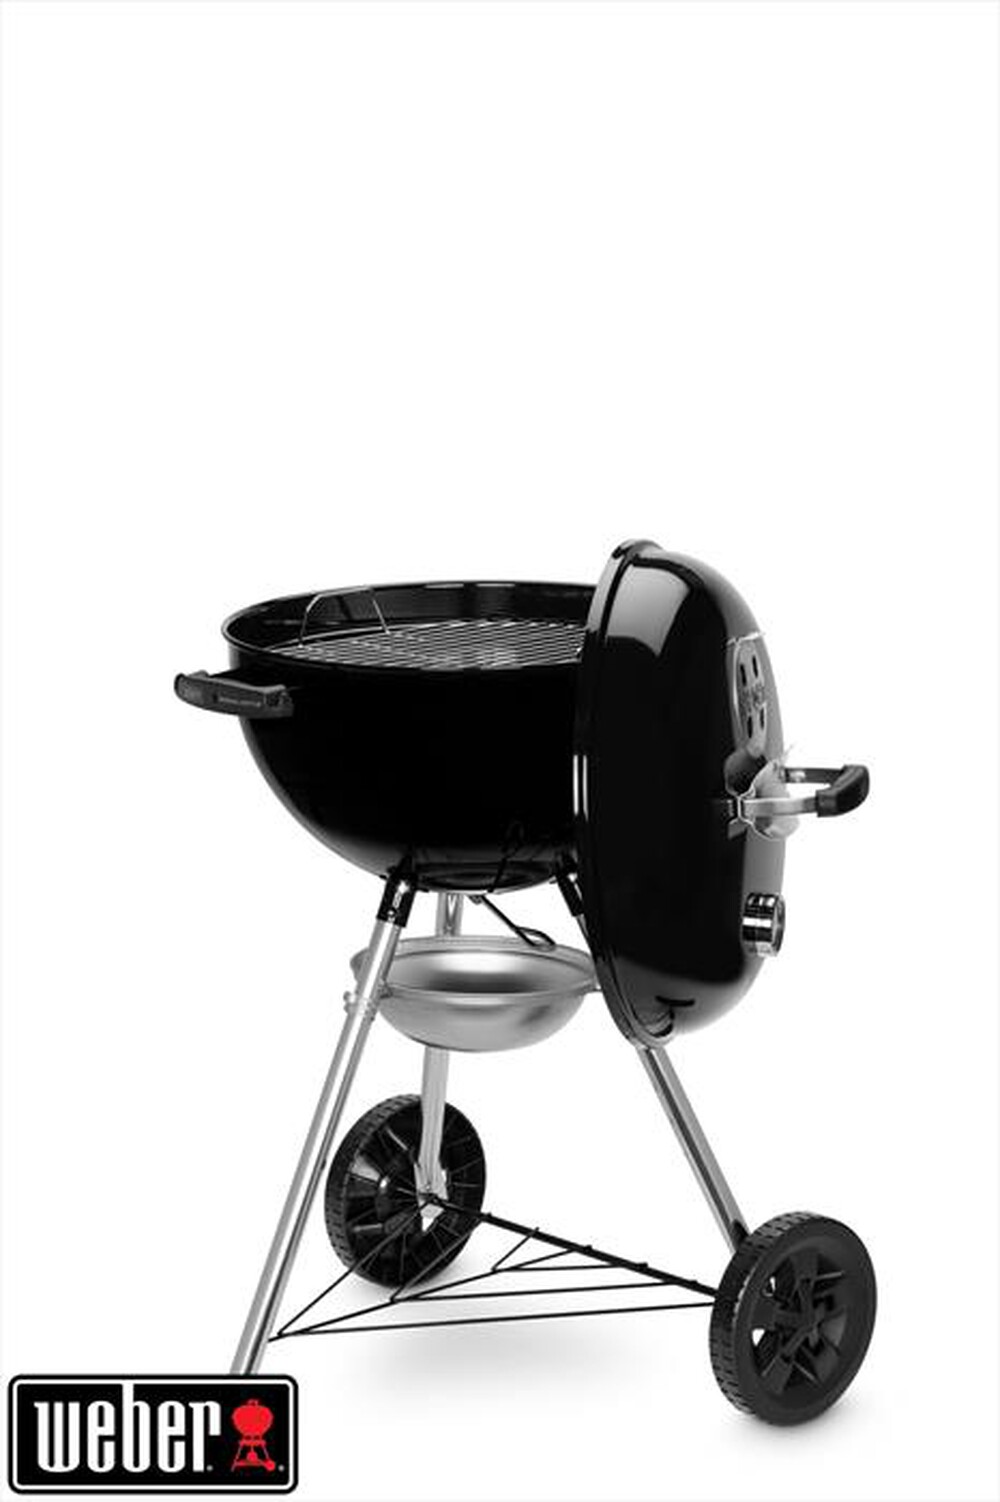 "WEBER - Barbecue a carbone ORIGINAL KETTLE E-4710-nero"